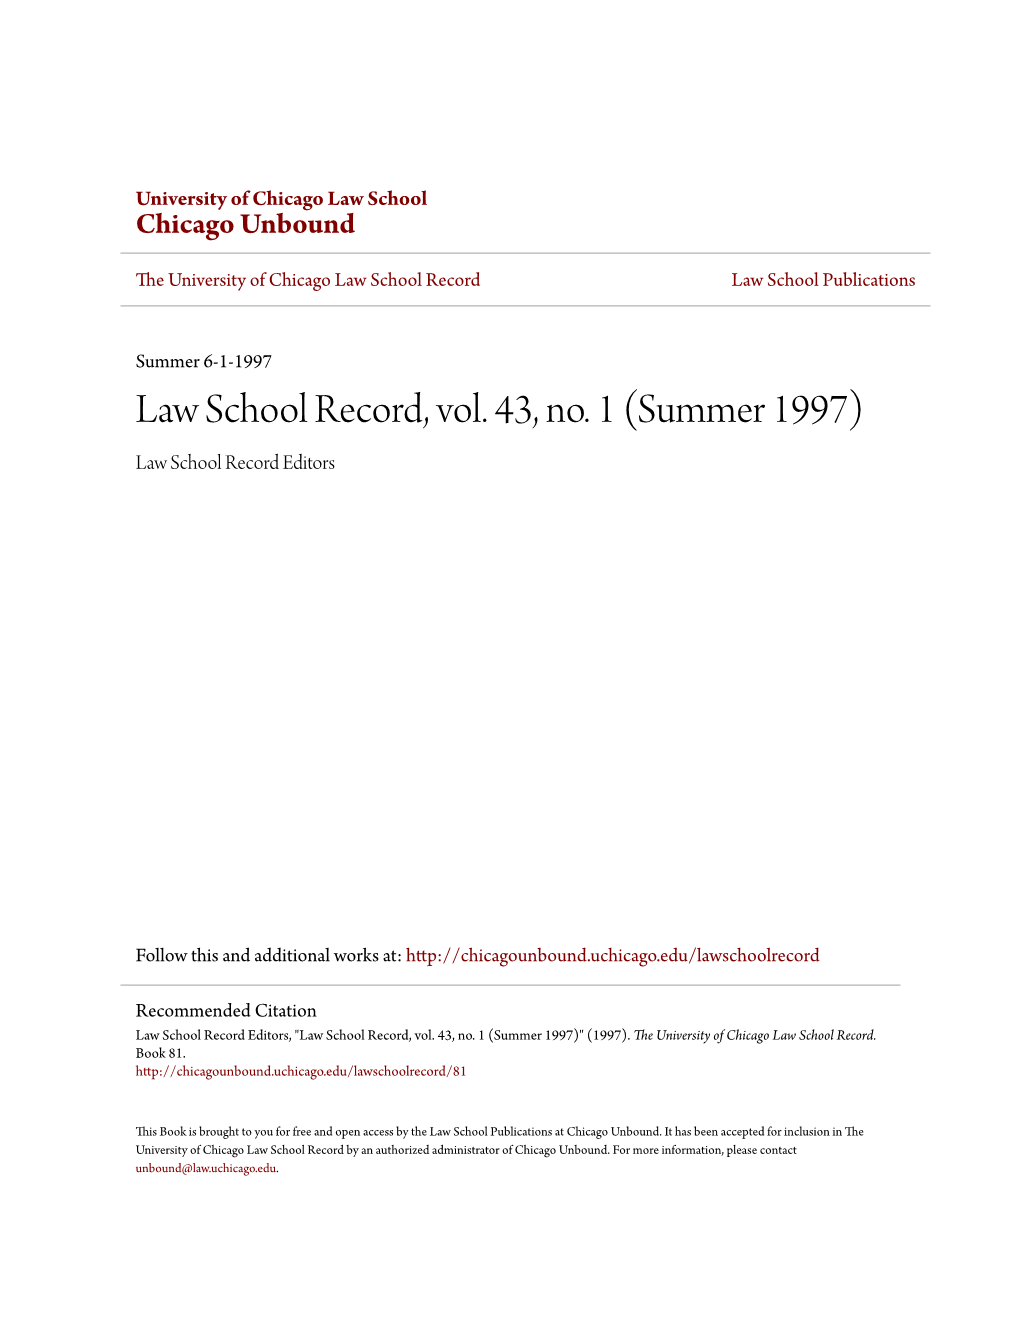 Law School Record, Vol. 43, No. 1 (Summer 1997) Law School Record Editors